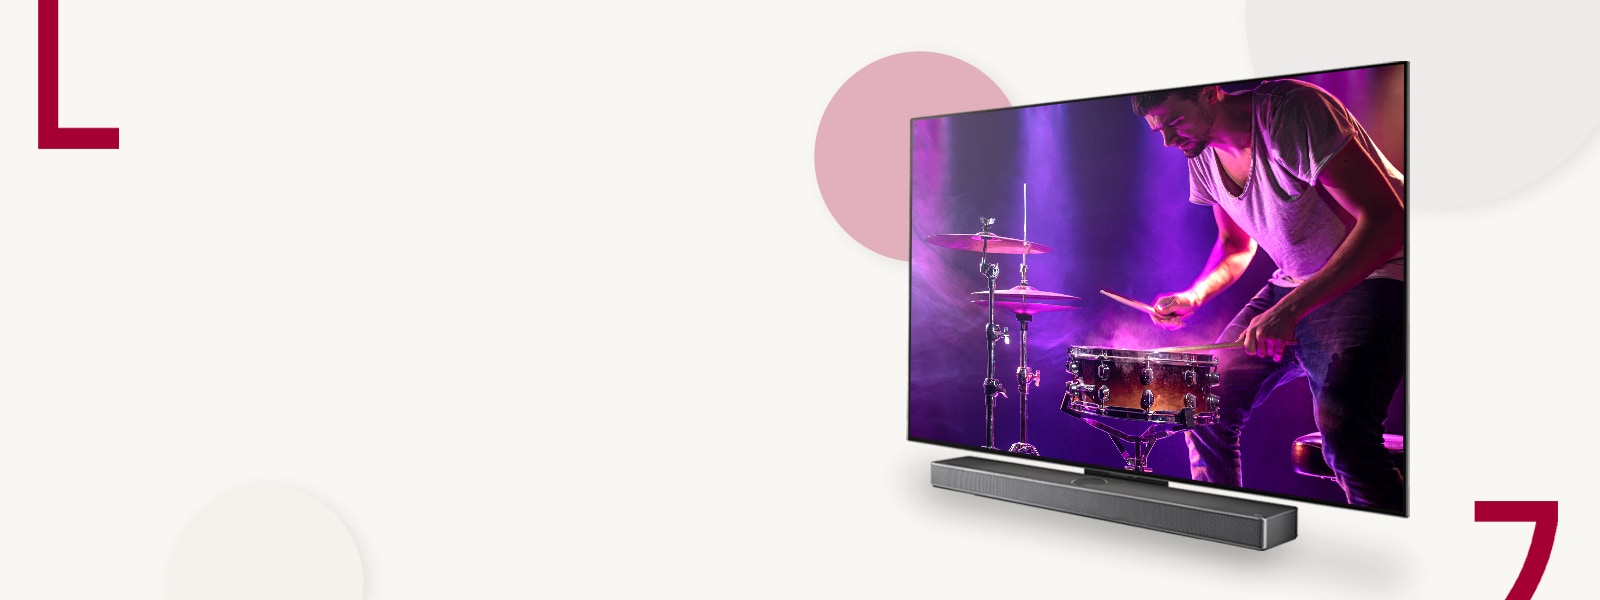 Een afbeelding van de LG OLED C3 en de soundbar tegen een crèmekleurige achtergrond met gekleurde cirkels. Op het scherm is een man te zien die drumt. 